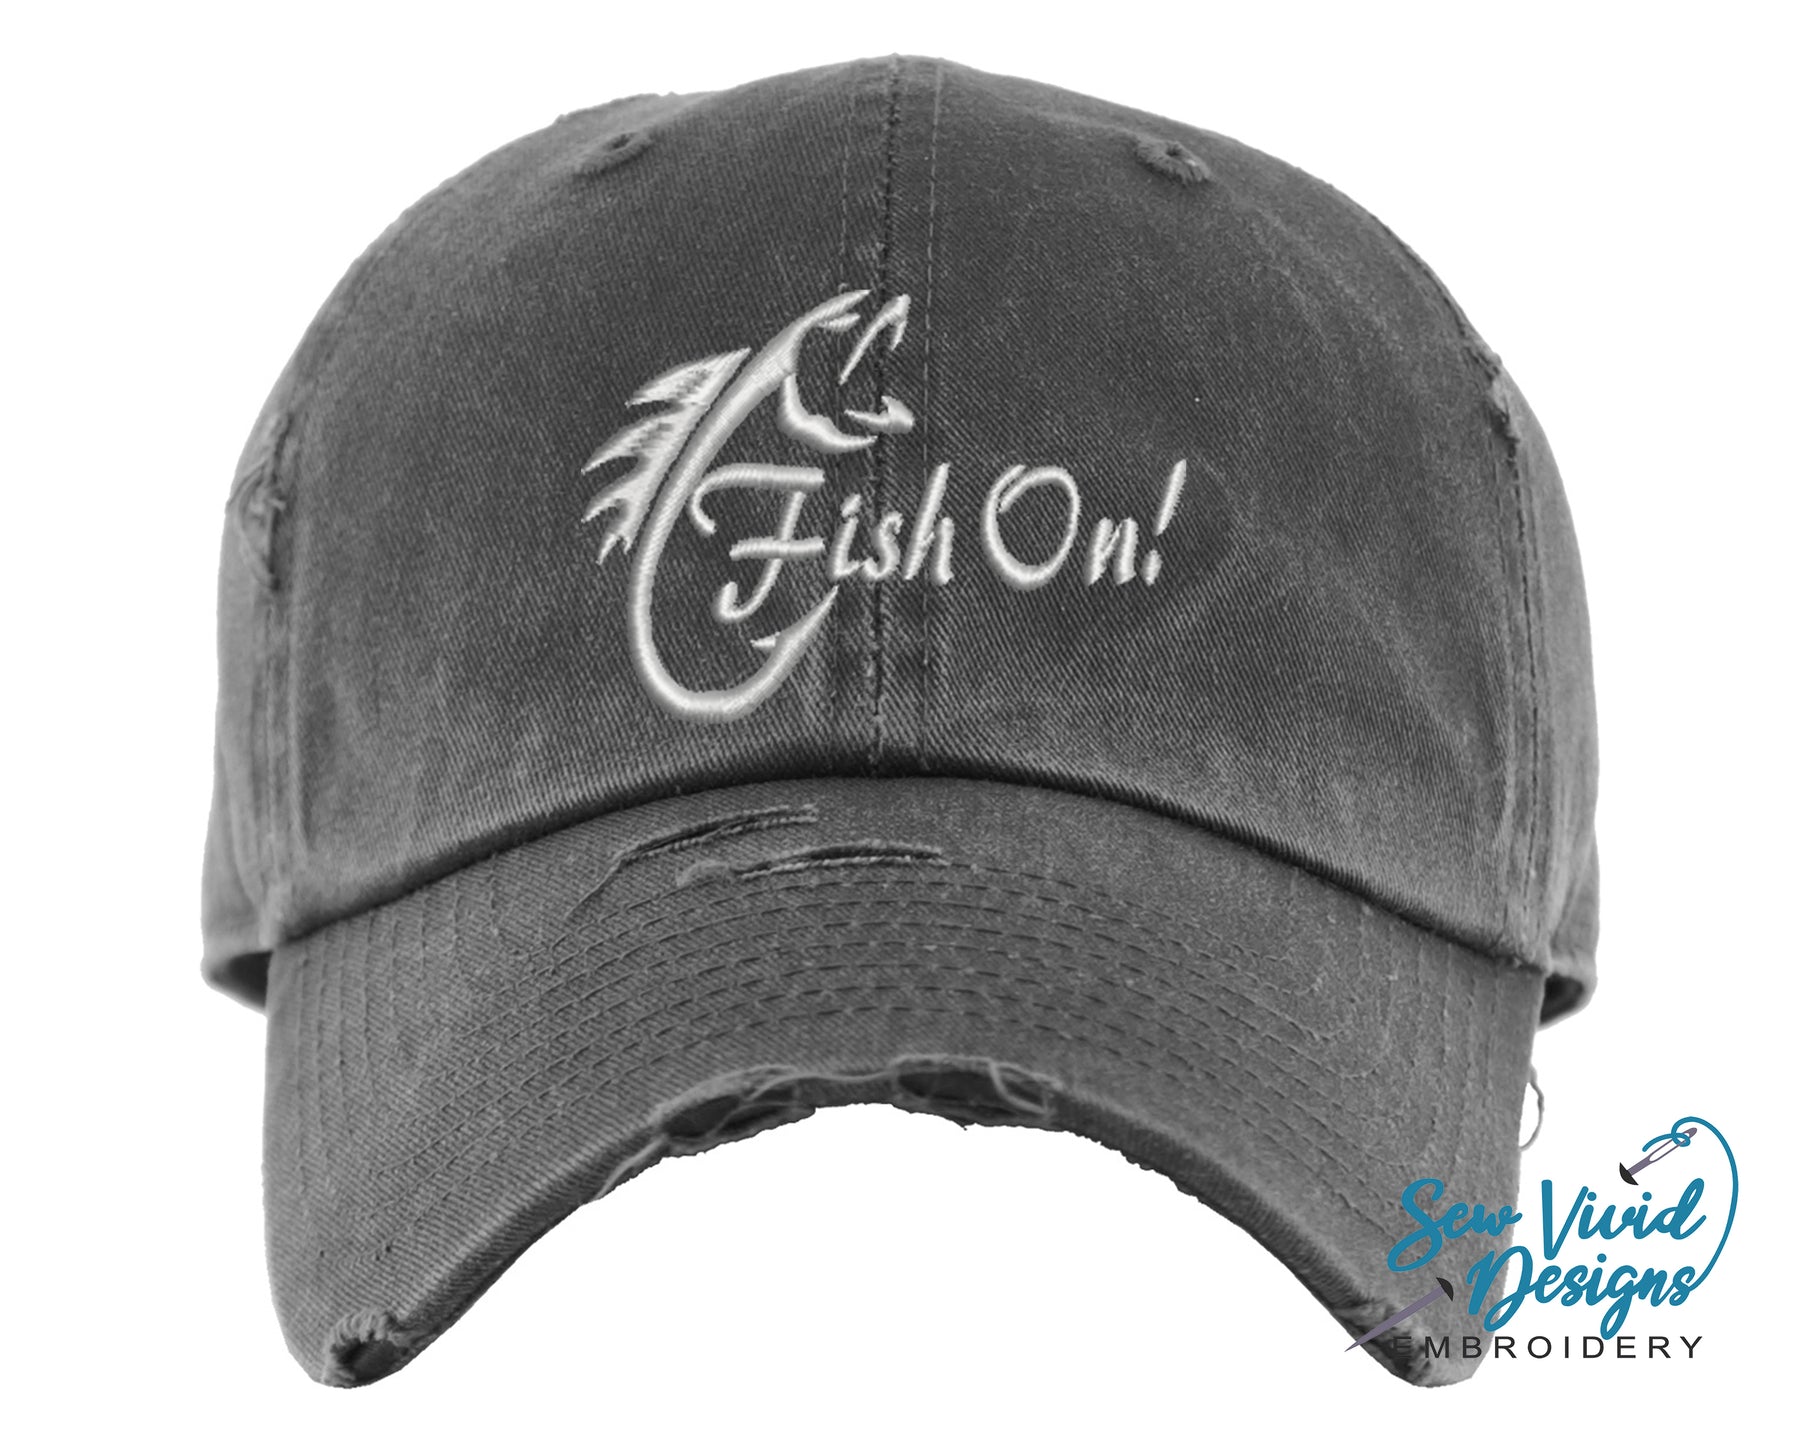 Fish On! Hat | Distressed Baseball Cap or Ponytail Hat | Fishing Hat Dk Grey Mesh Ponytail